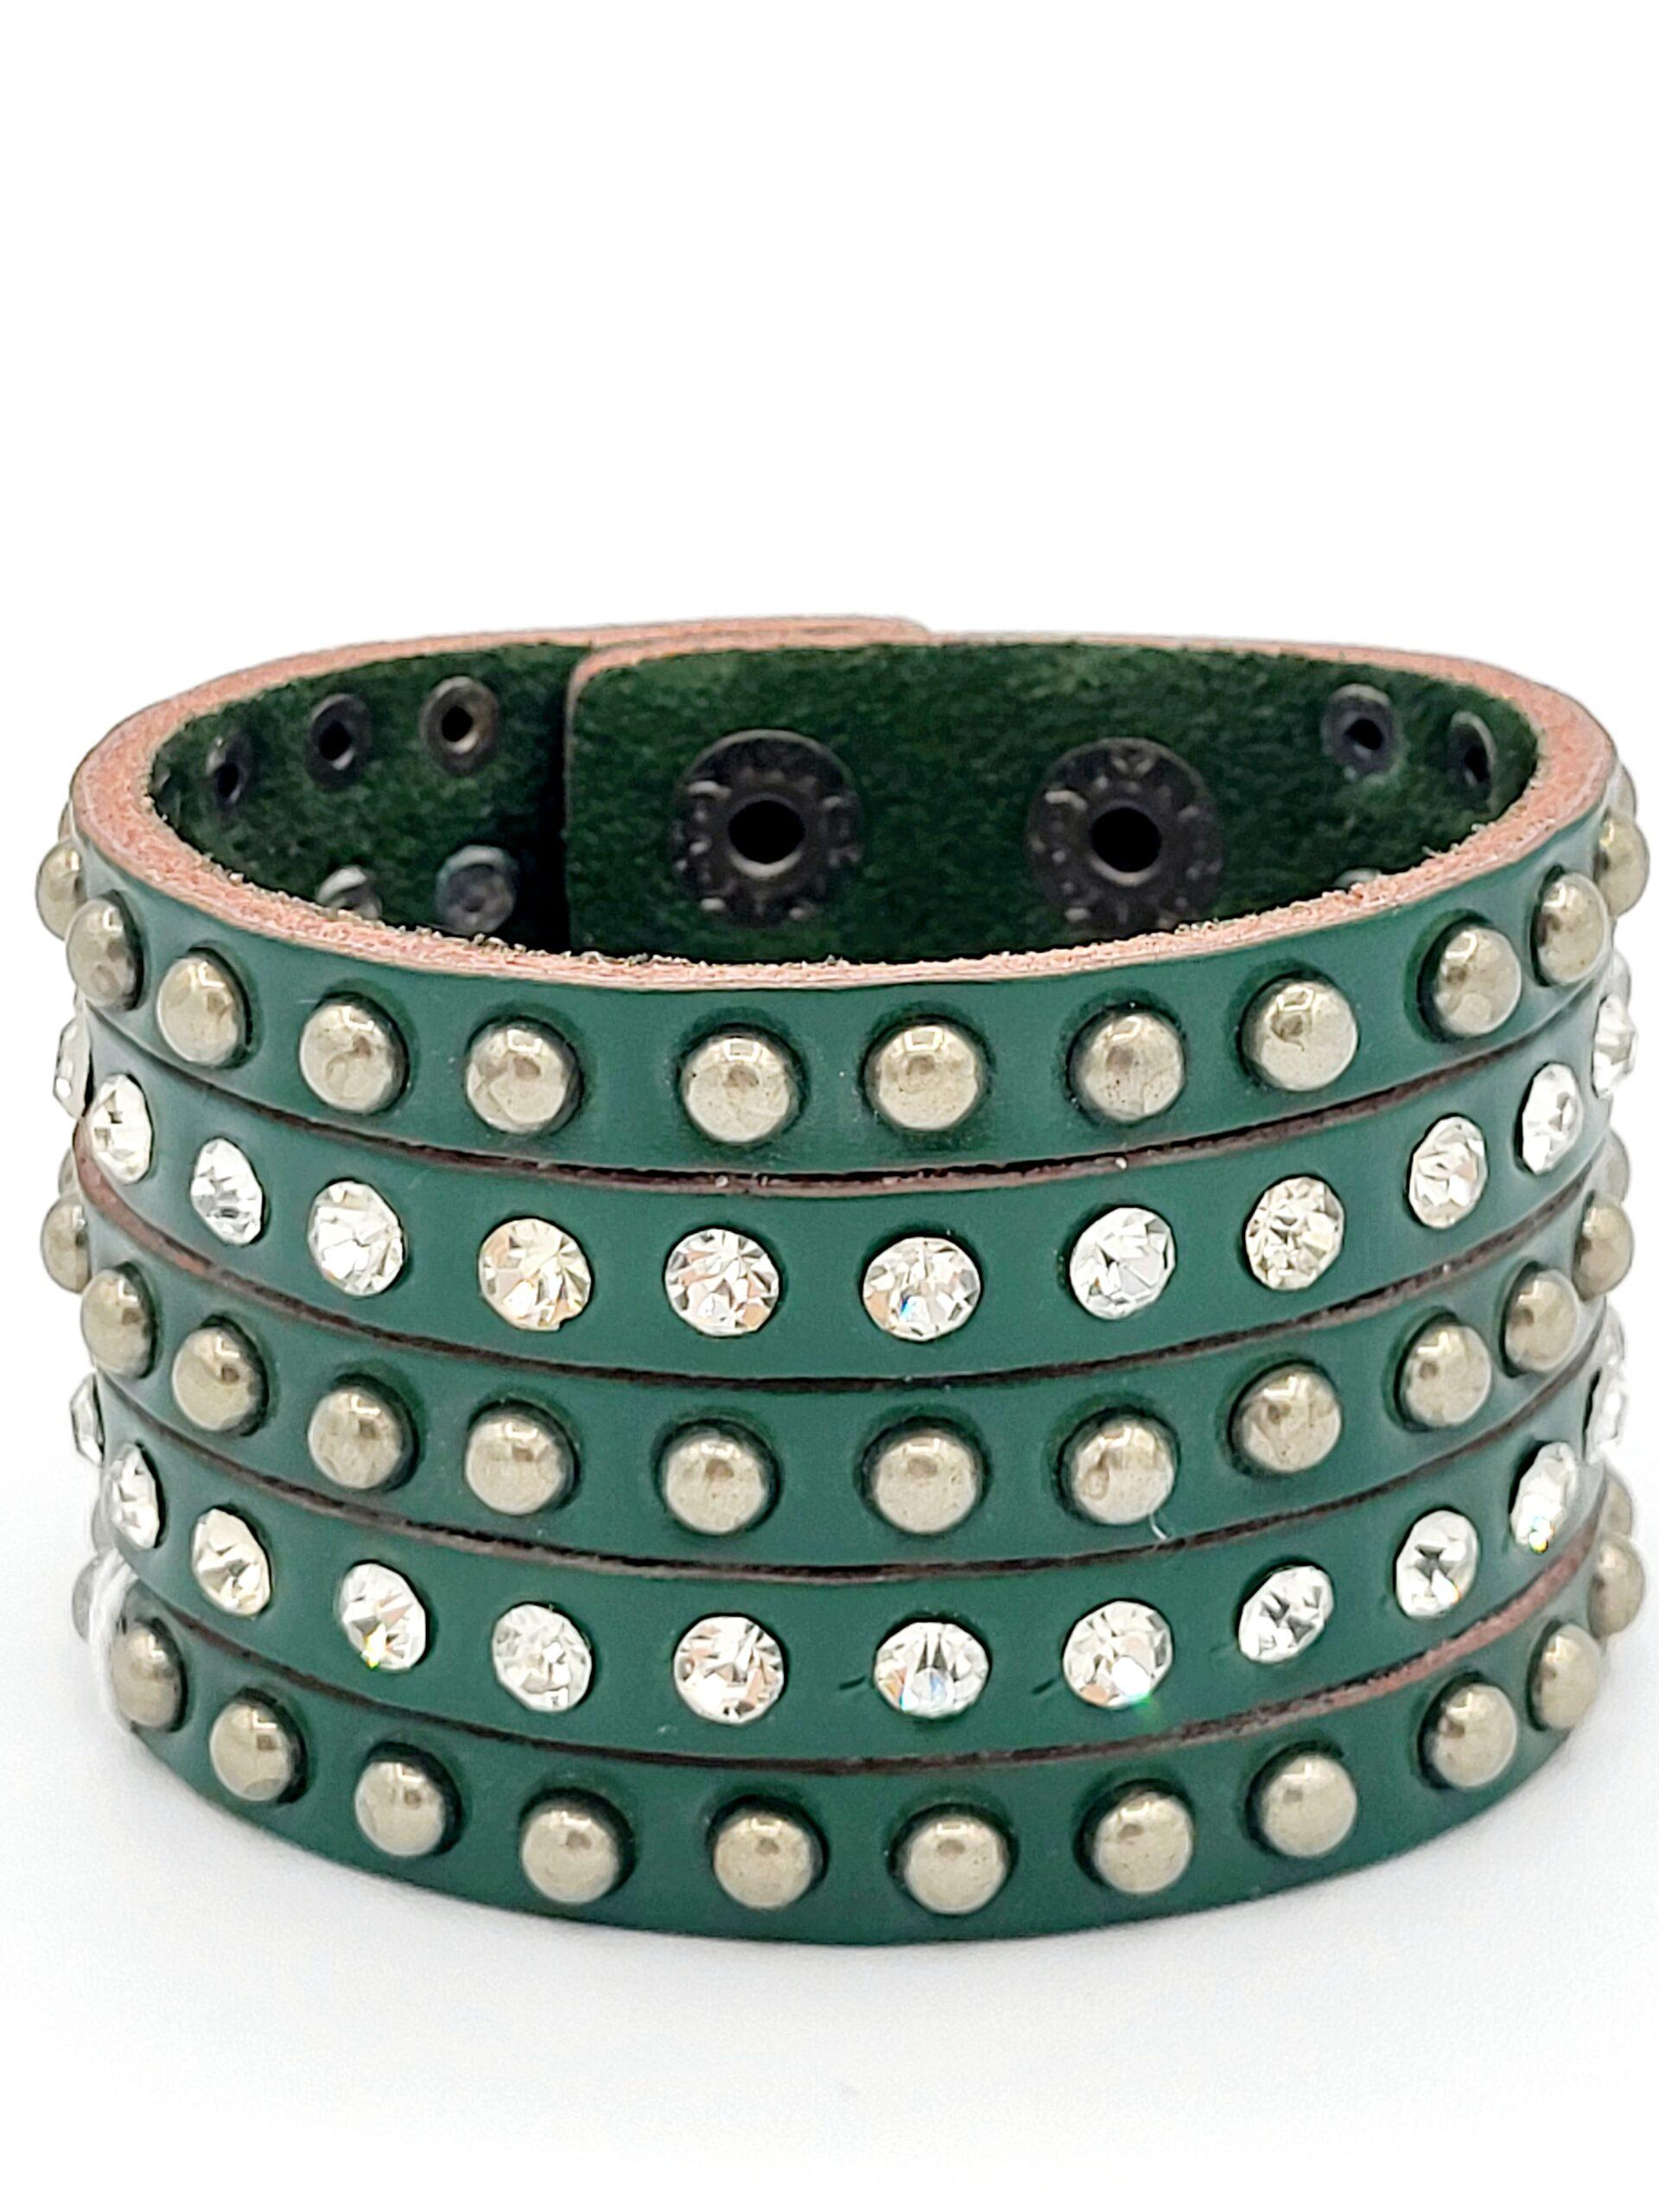 Pulsera Tyler Verde the annies shop moda estilo bisuteria pulsera original verde esmeralda piedras brillantes cierre boton bronce